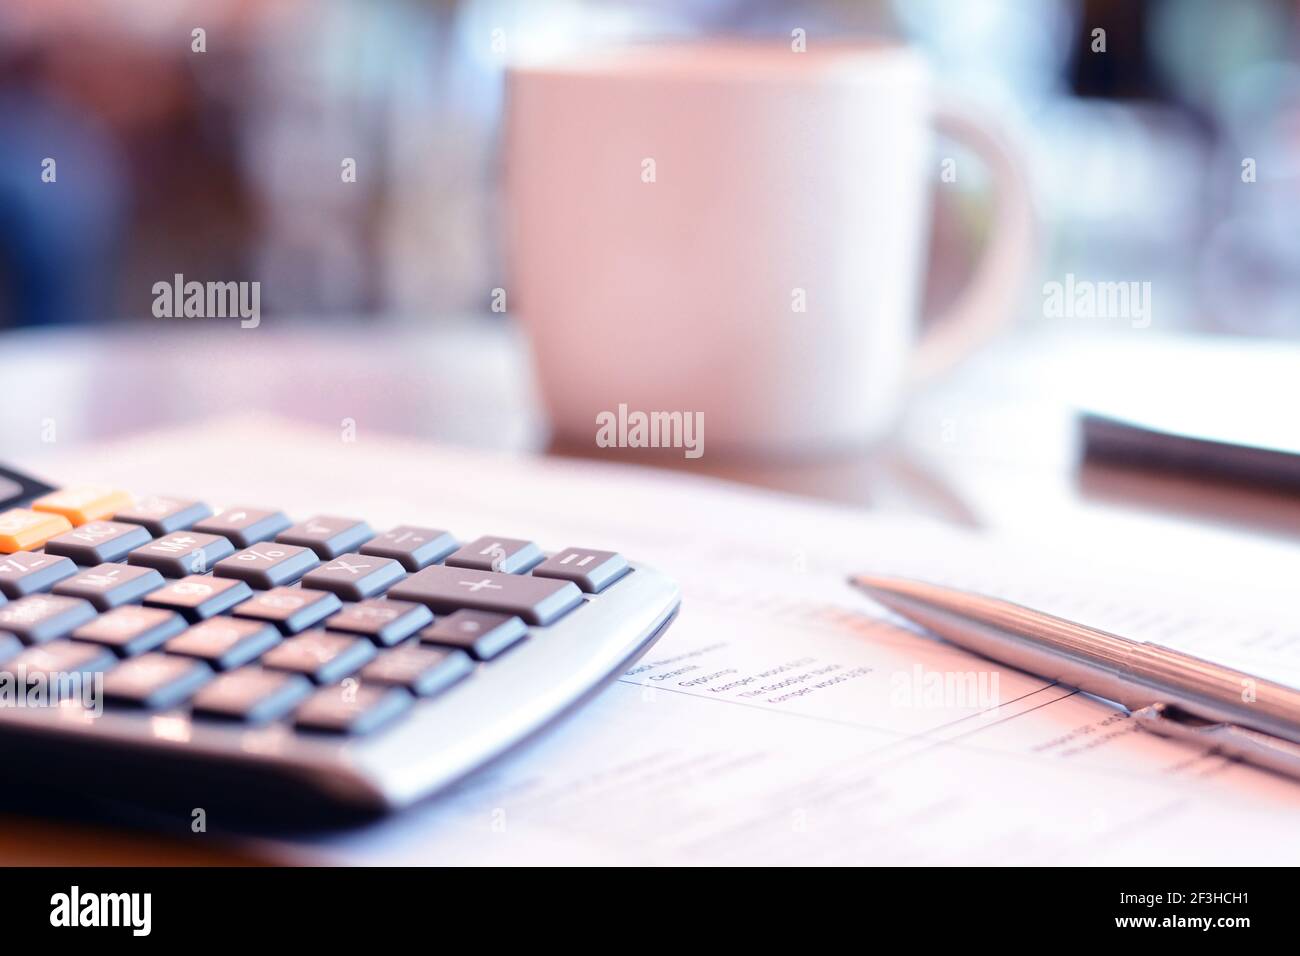 calculatrice et stylo sur papier sur la table avec flou fond de la tasse à café Banque D'Images